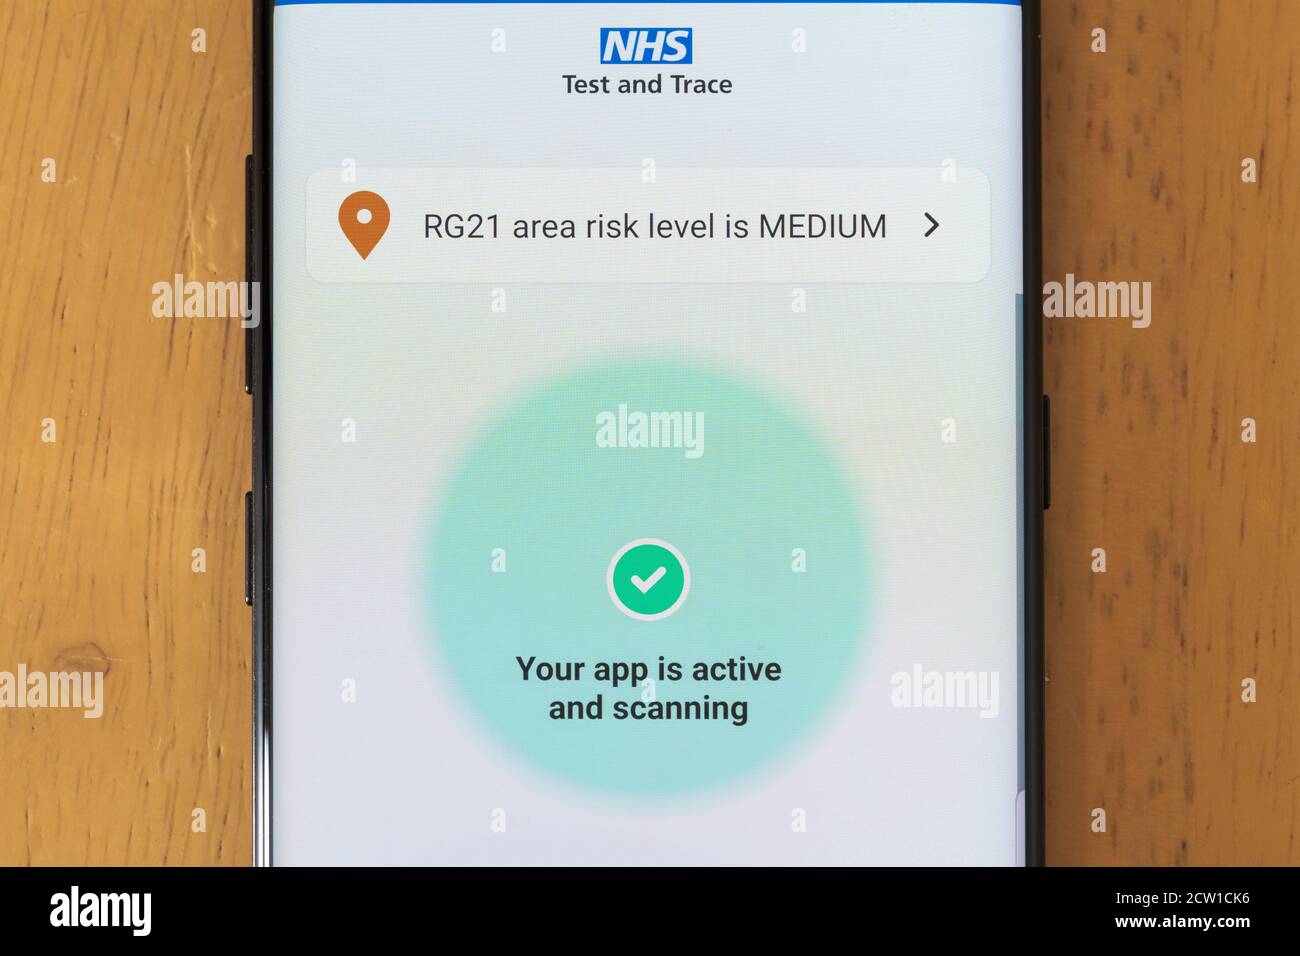 L'application NHS Test and Trace sur un écran de smartphone est active et affiche le niveau de risque pour une région en Angleterre, au Royaume-Uni Banque D'Images